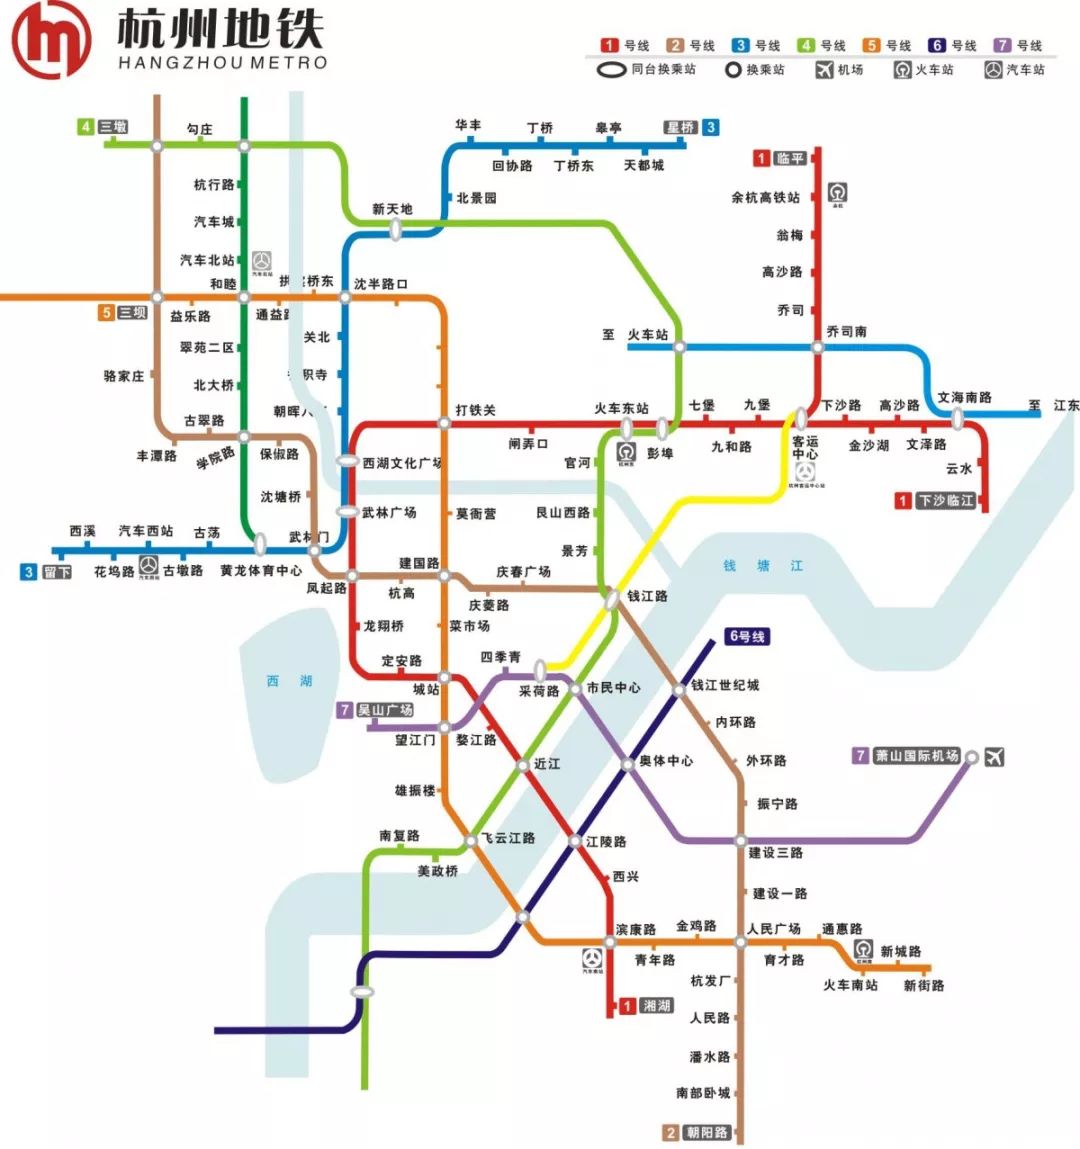 【地铁】各城市地铁(轨道交通)线路图,一看就明白!